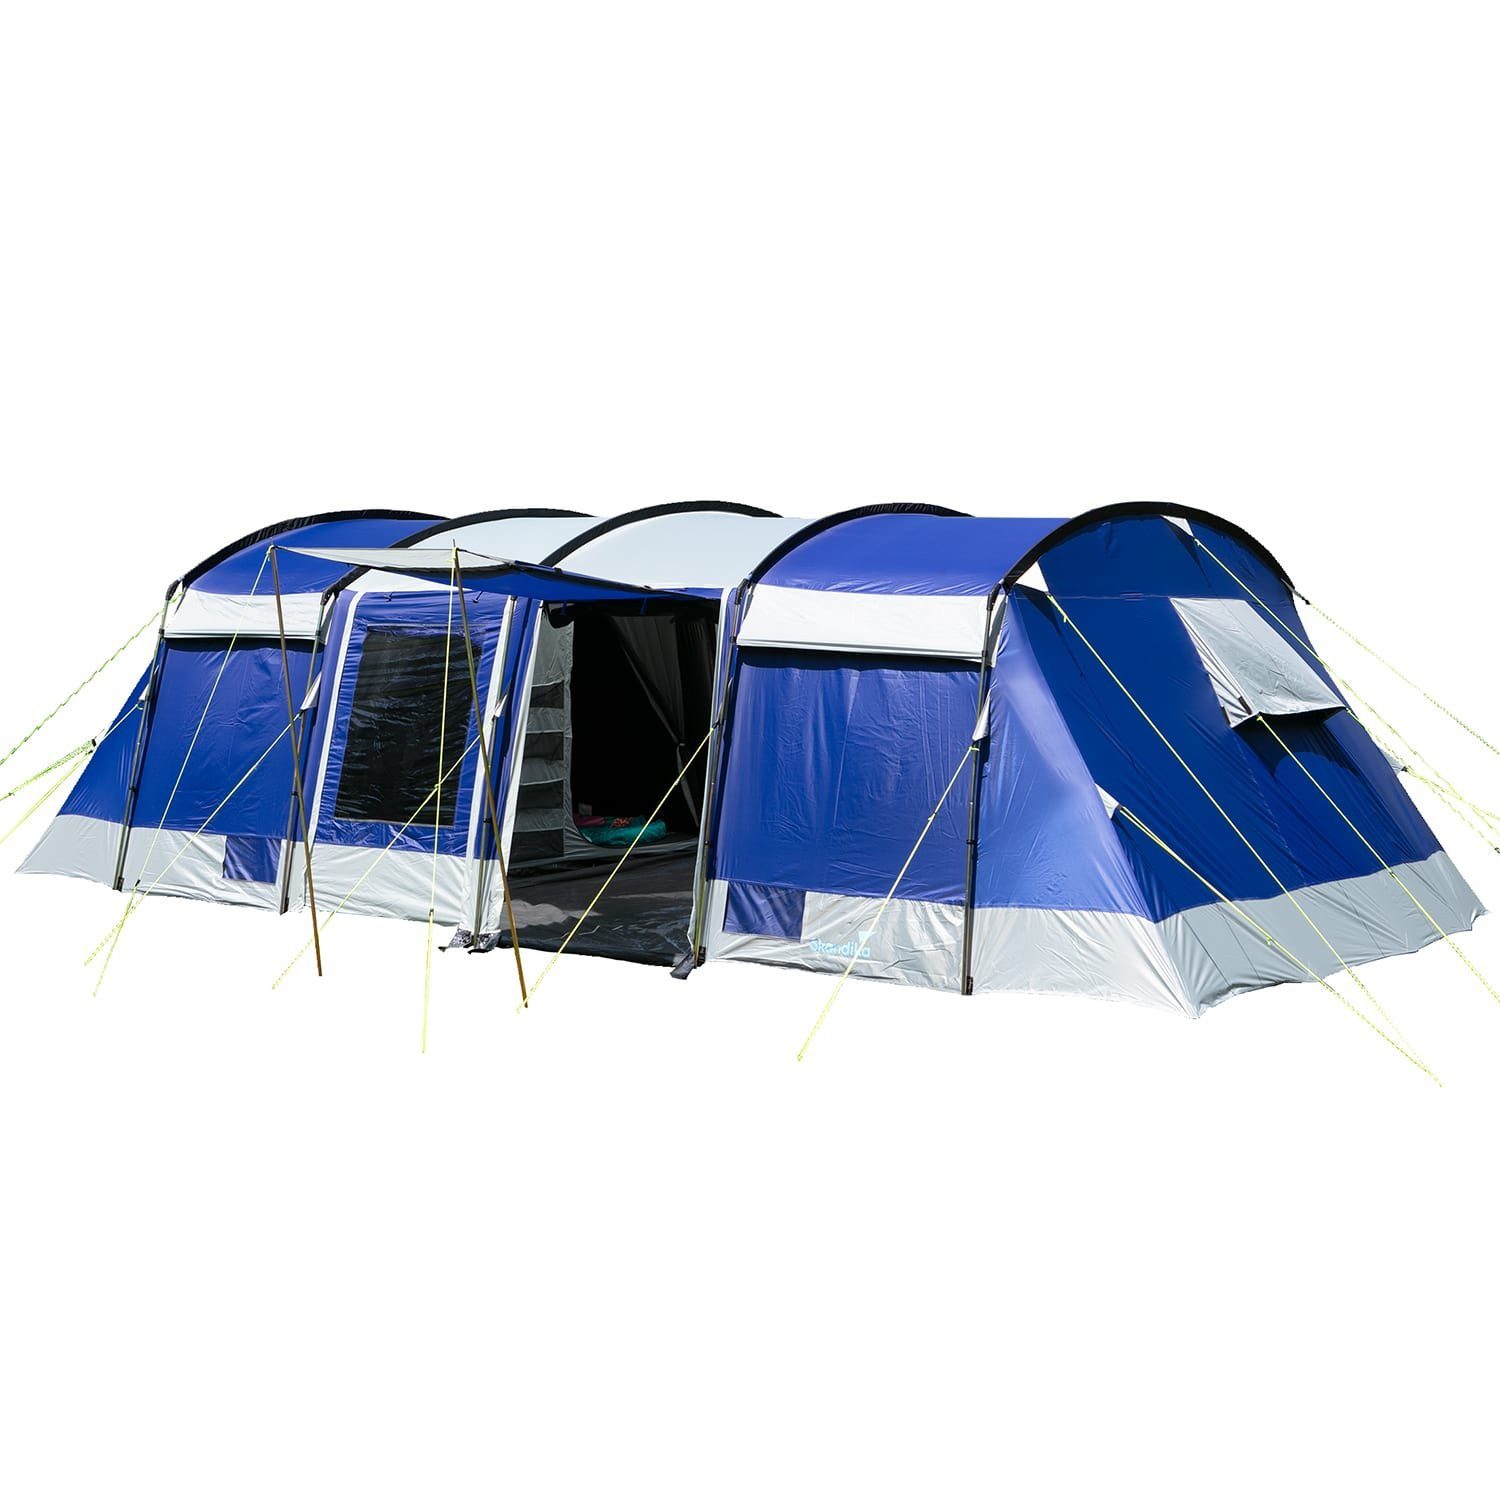 Skandika Tunnelzelt Montana 10 Sleeper (blau), für 10 Personen, Camping Zelt  mit Sleeper Technologie, Schwarze und dunkle Schlafkabinen, wasserdicht, 5000  mm Wassersäule, Moskitonetz, 4 Eingänge, Familienzelt